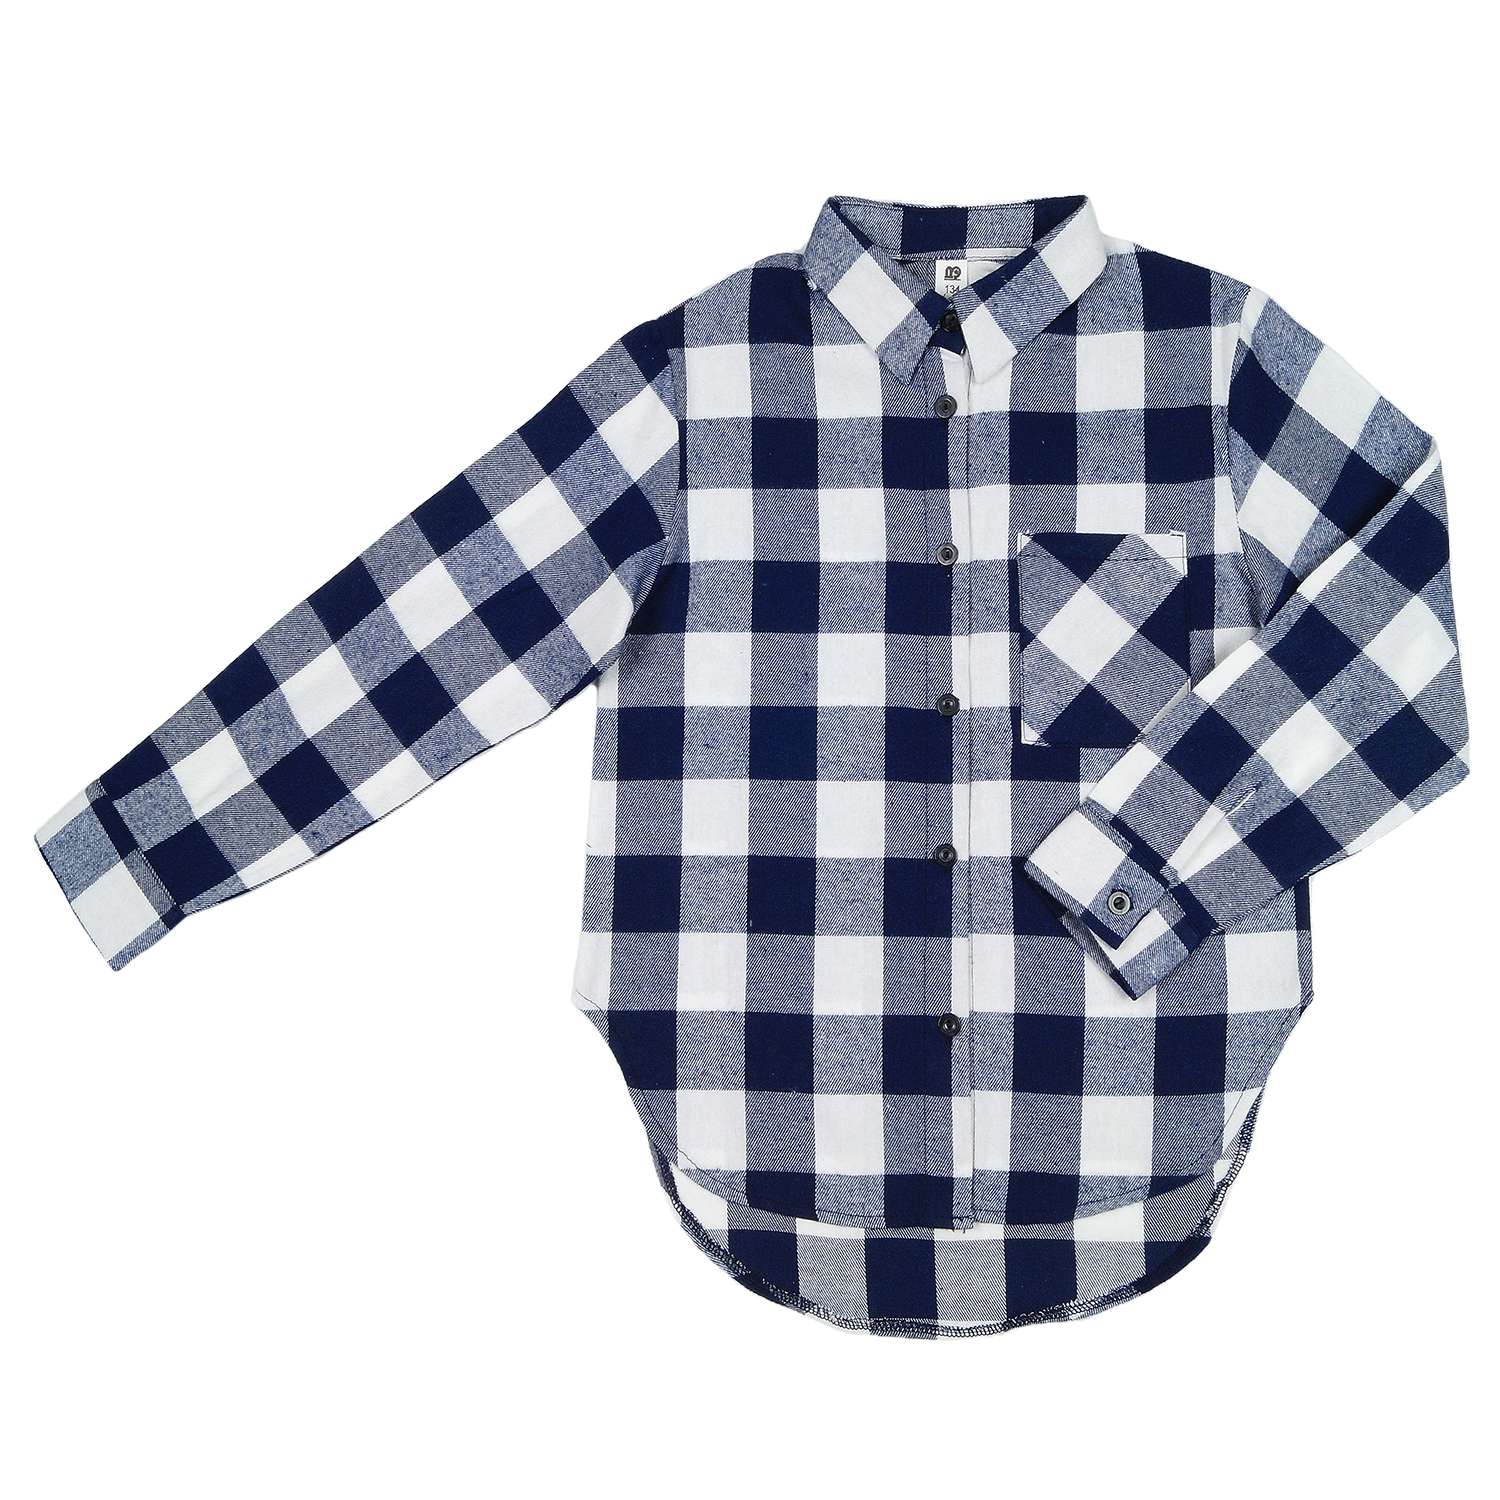 Рубашка Детская Одежда 4101Флн/белый_синий2 - фото 1